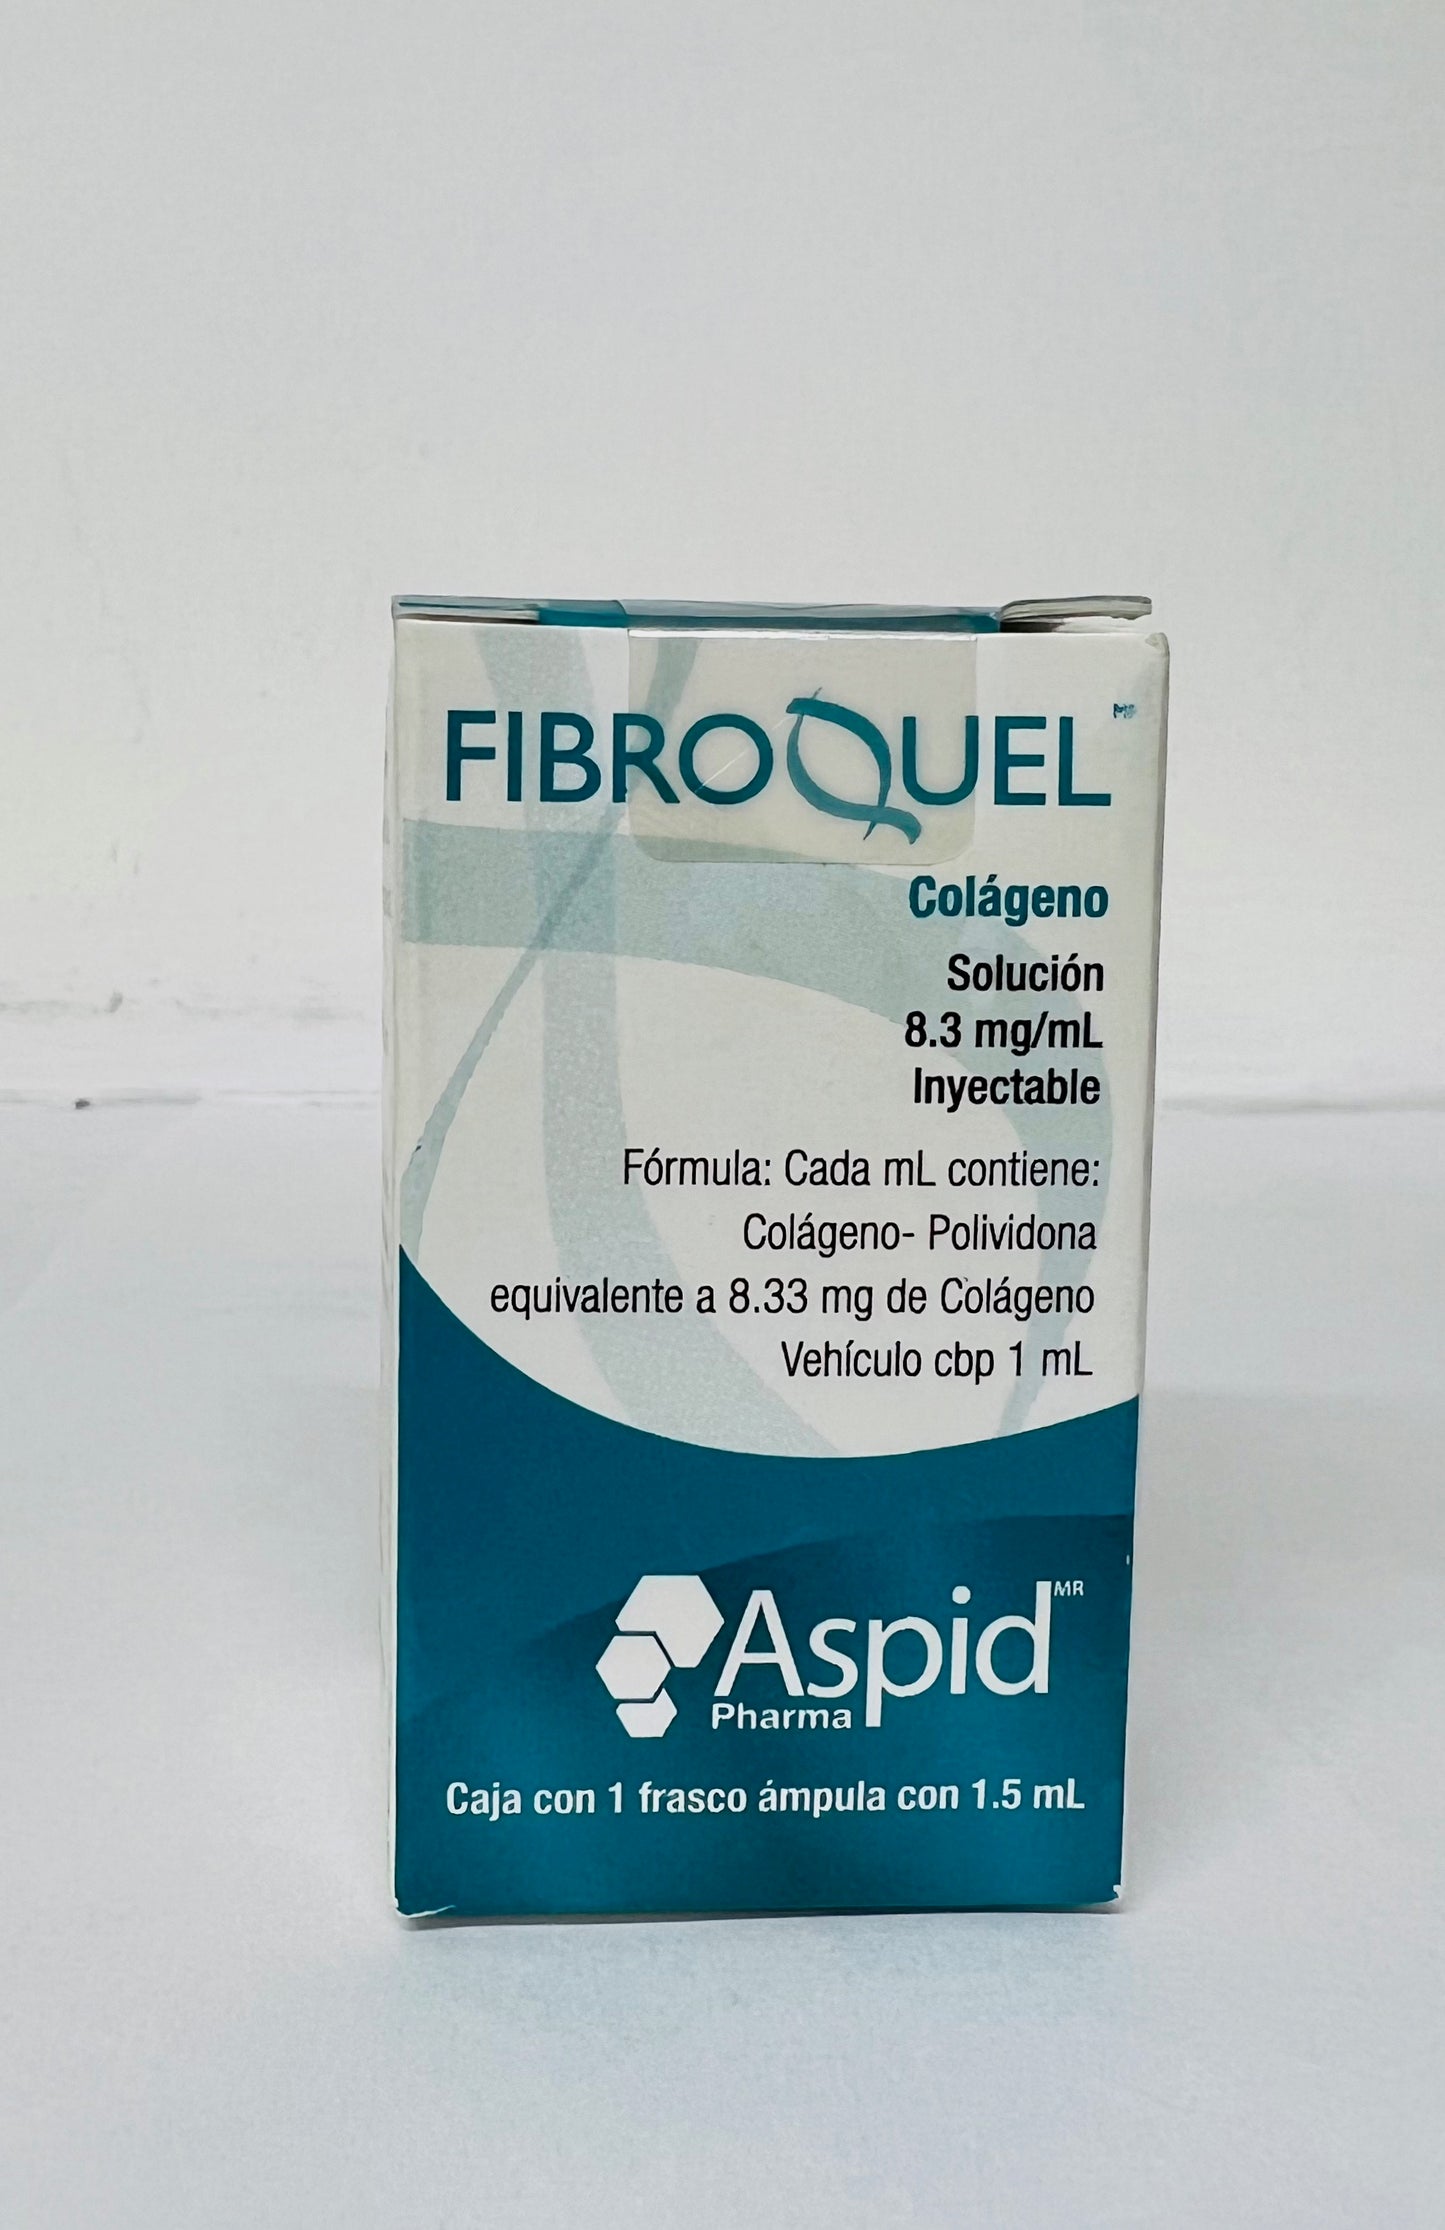 Fibroquel 1 ampolleta 1.5 ml (Copolimero)